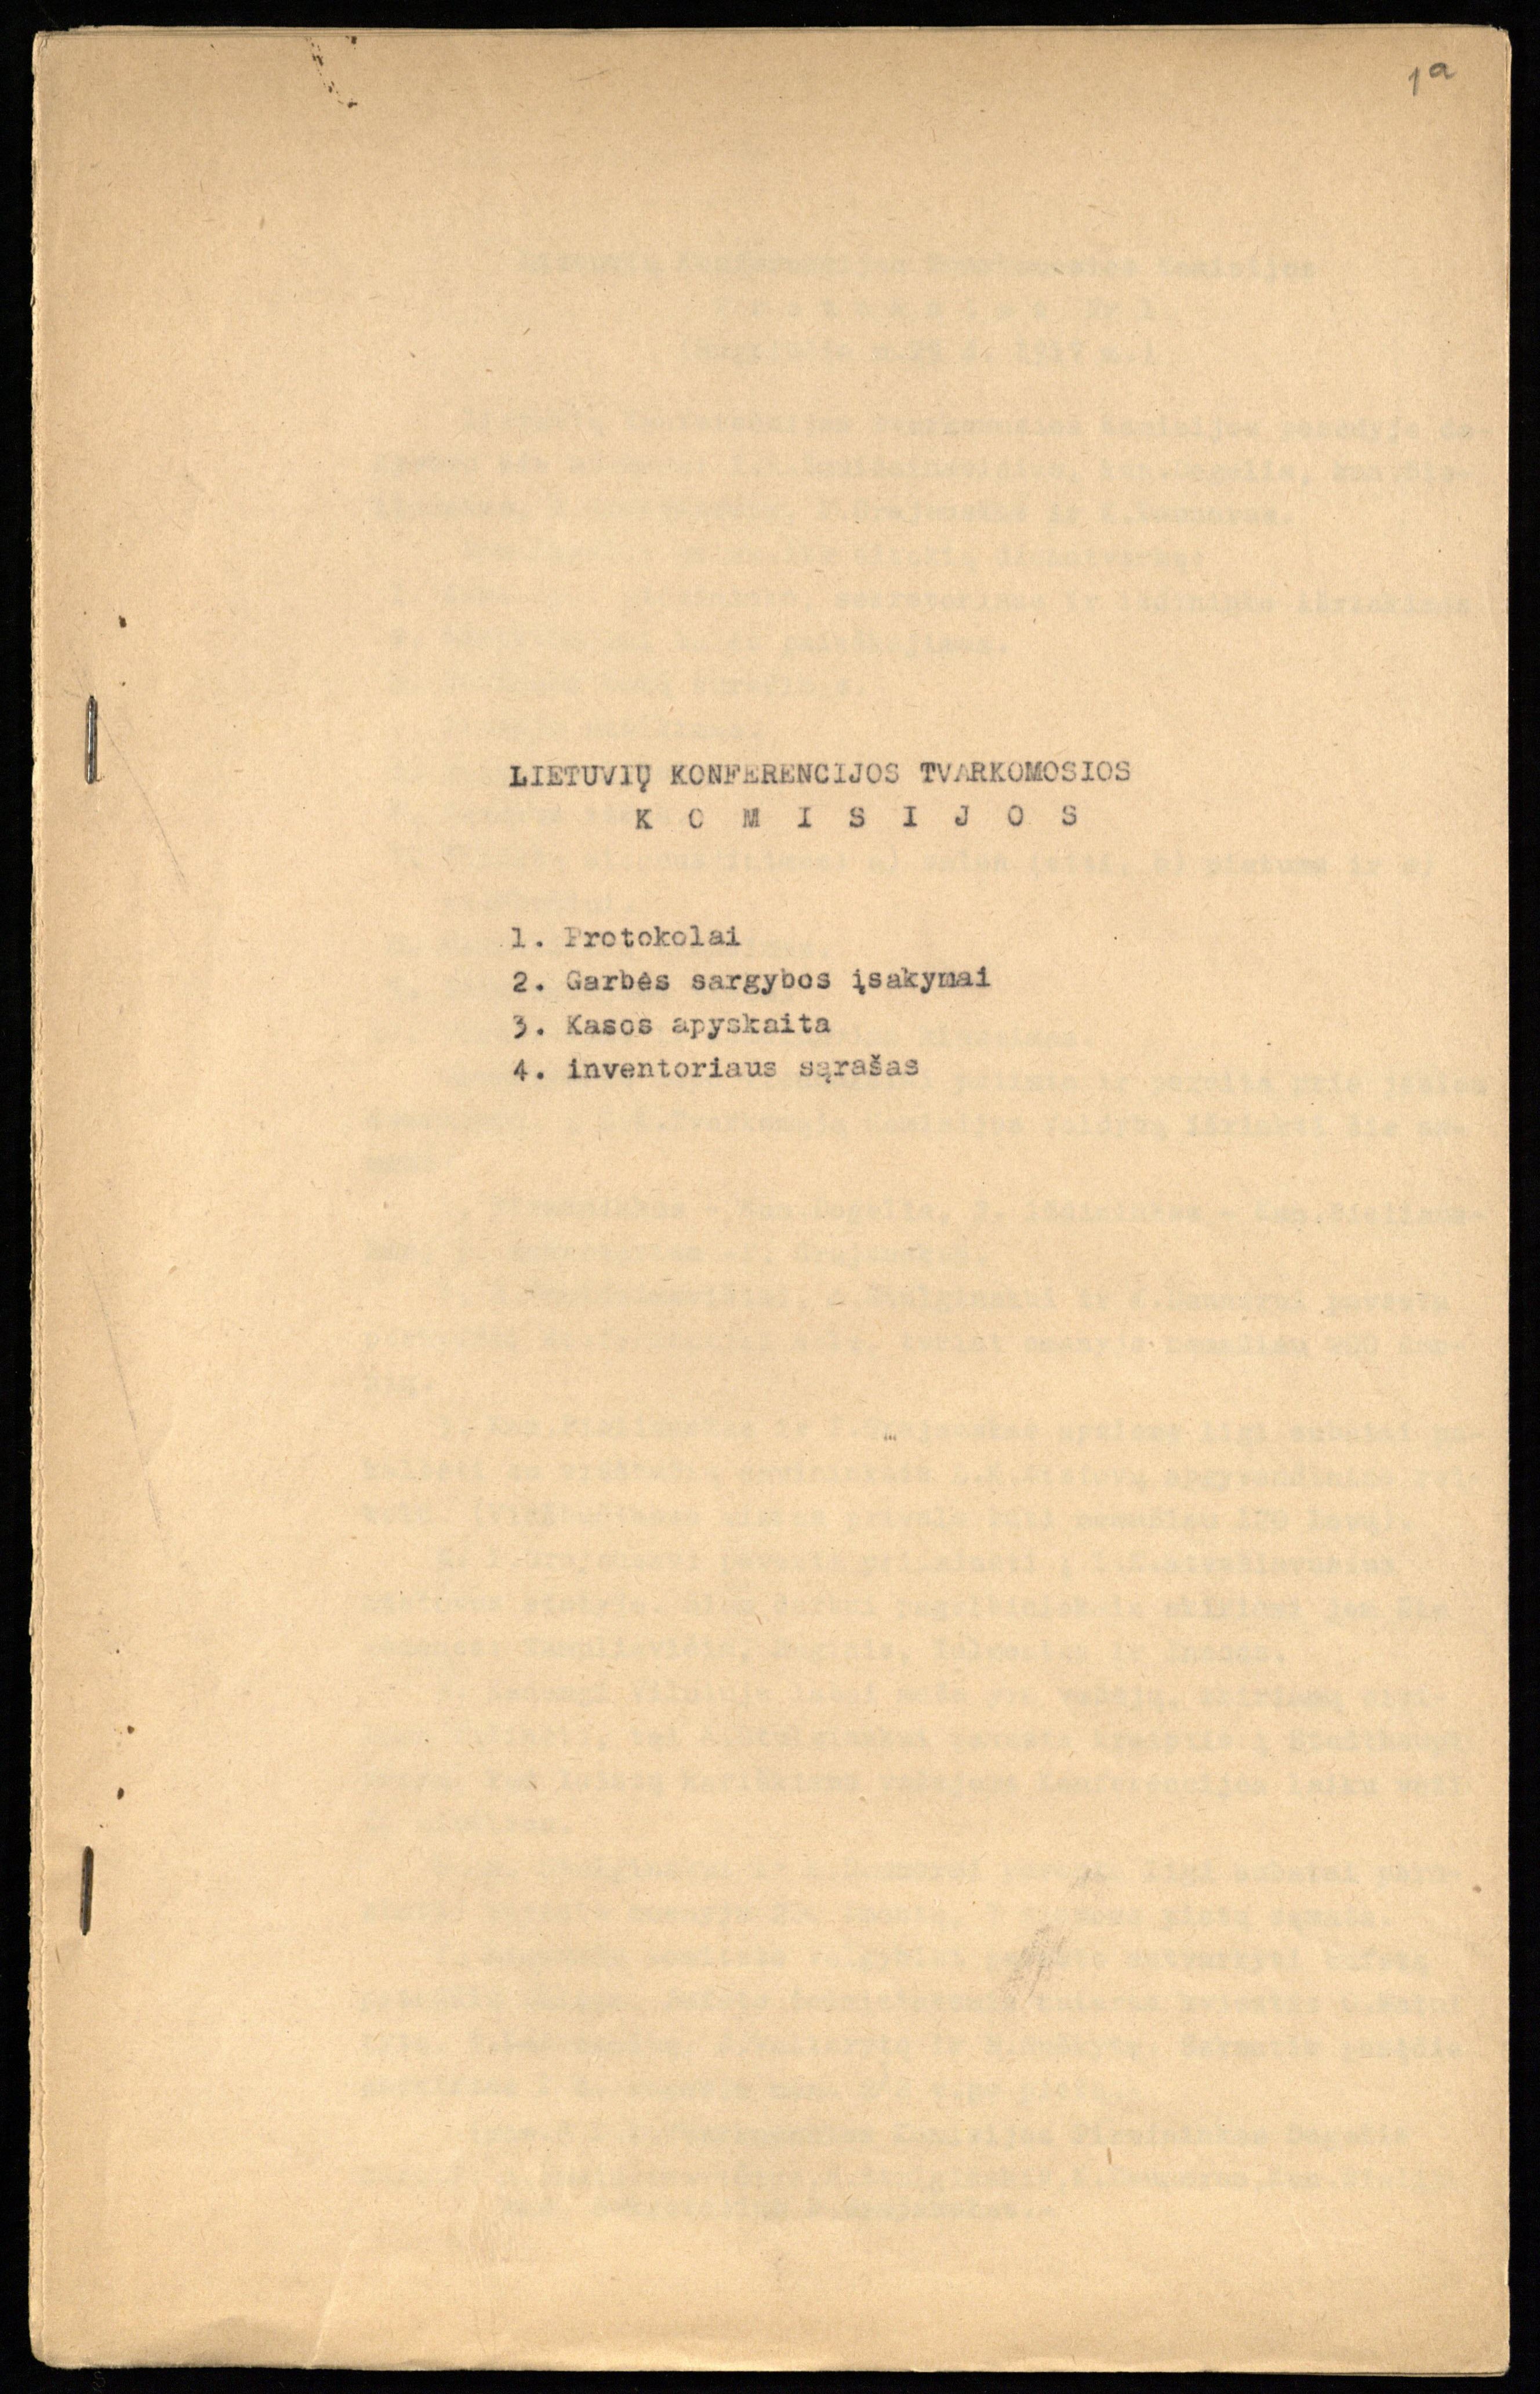 Lietuvių konferencijos Tvarkomosios komisijos protokolai, garbės sargybos įsakymai, kasos apyskaita. 1917 m. rugpjūčio 29 – spalio 18 d.